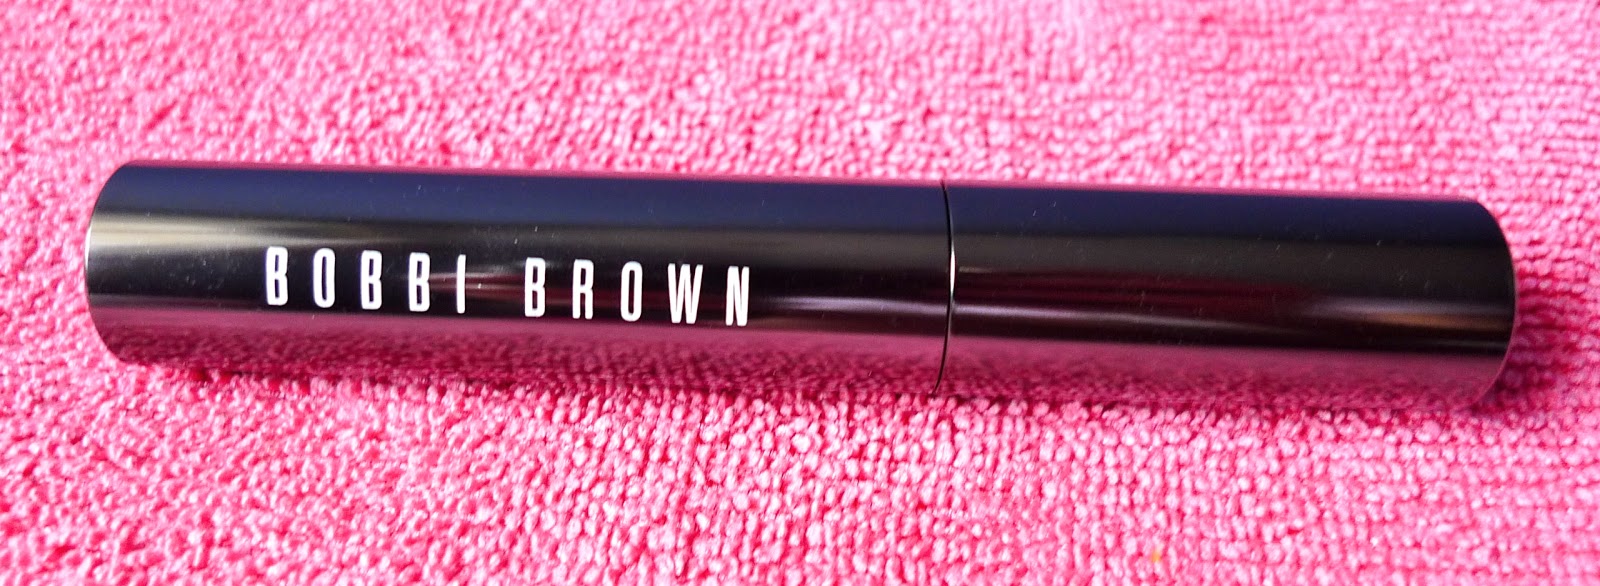 Review: Bobbi Brown Long-Wear Mascara (Black)